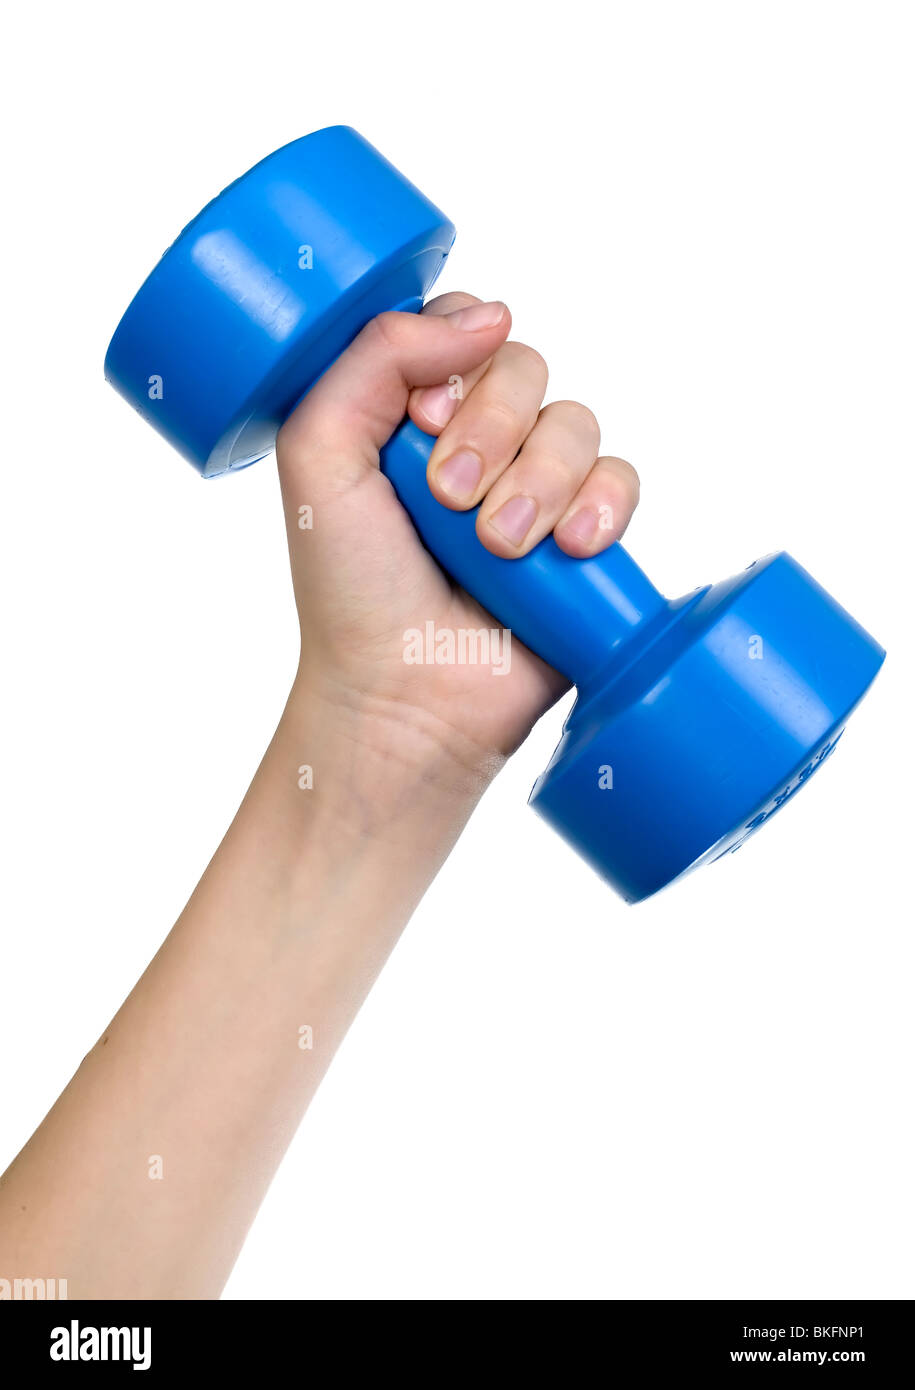 Menschliche Hand hält blau Hantel, weißer Hintergrund Stockfoto